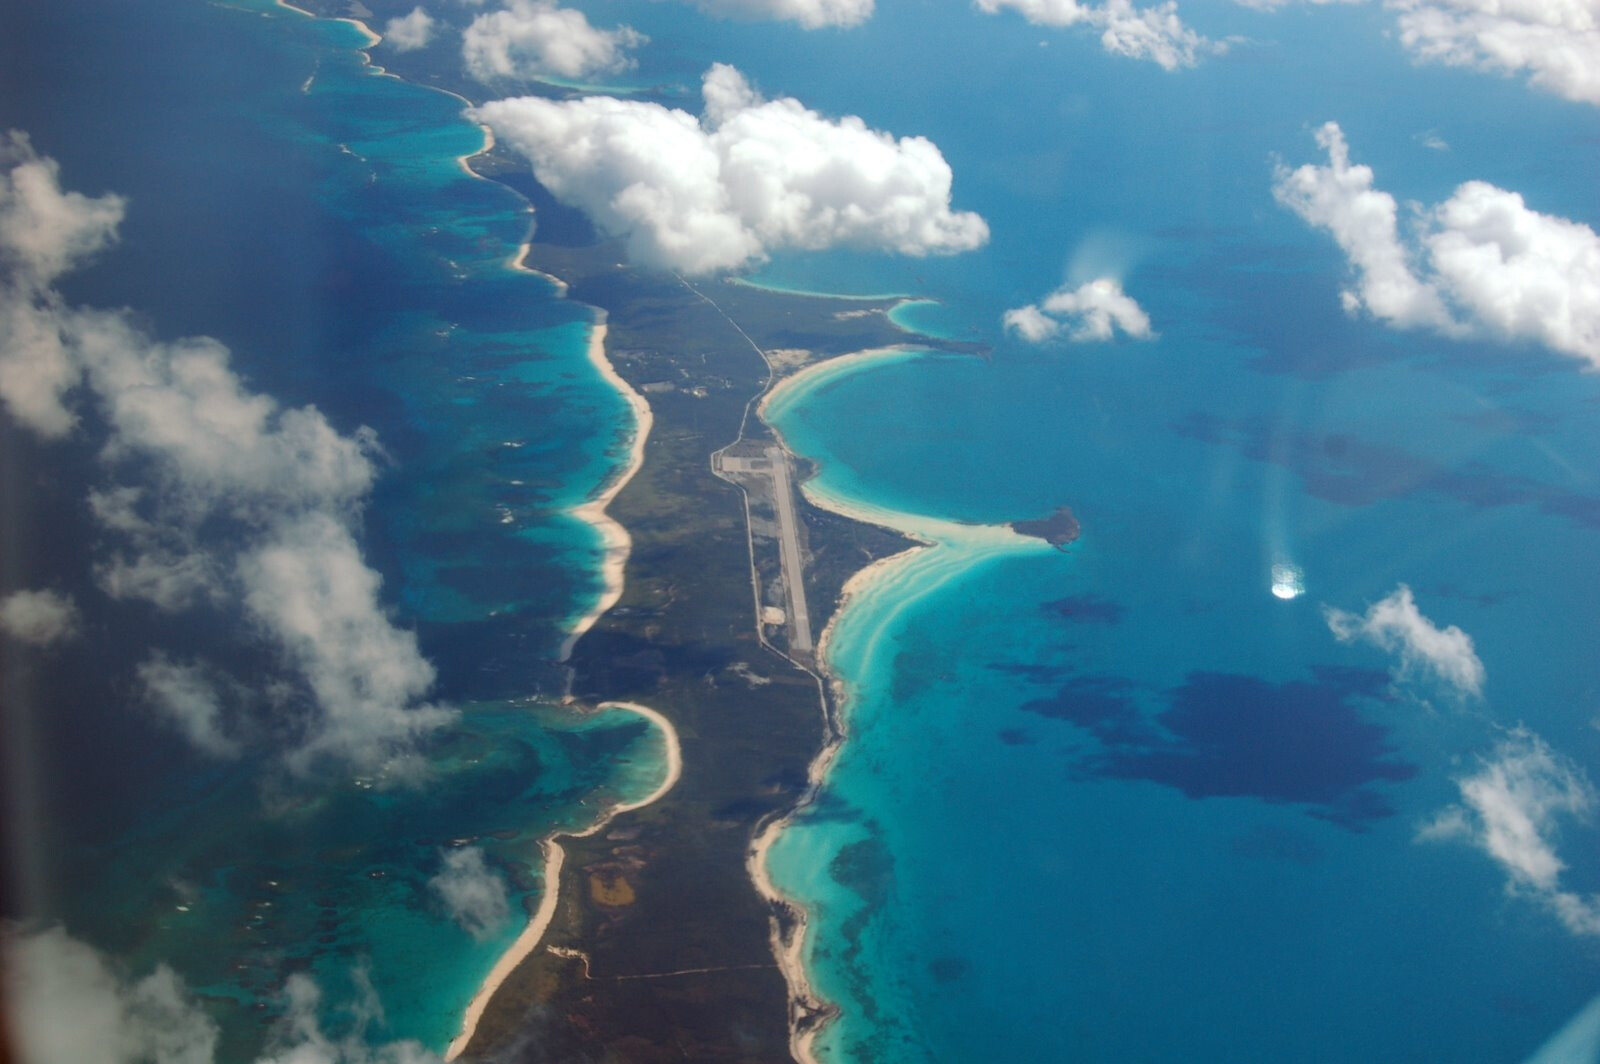 Встречается тихий и атлантический океан. Эльютера Багамские острова. Карибское море Атлантический океан. Остров Эльютера. Граница Карибского моря и Атлантического океана.